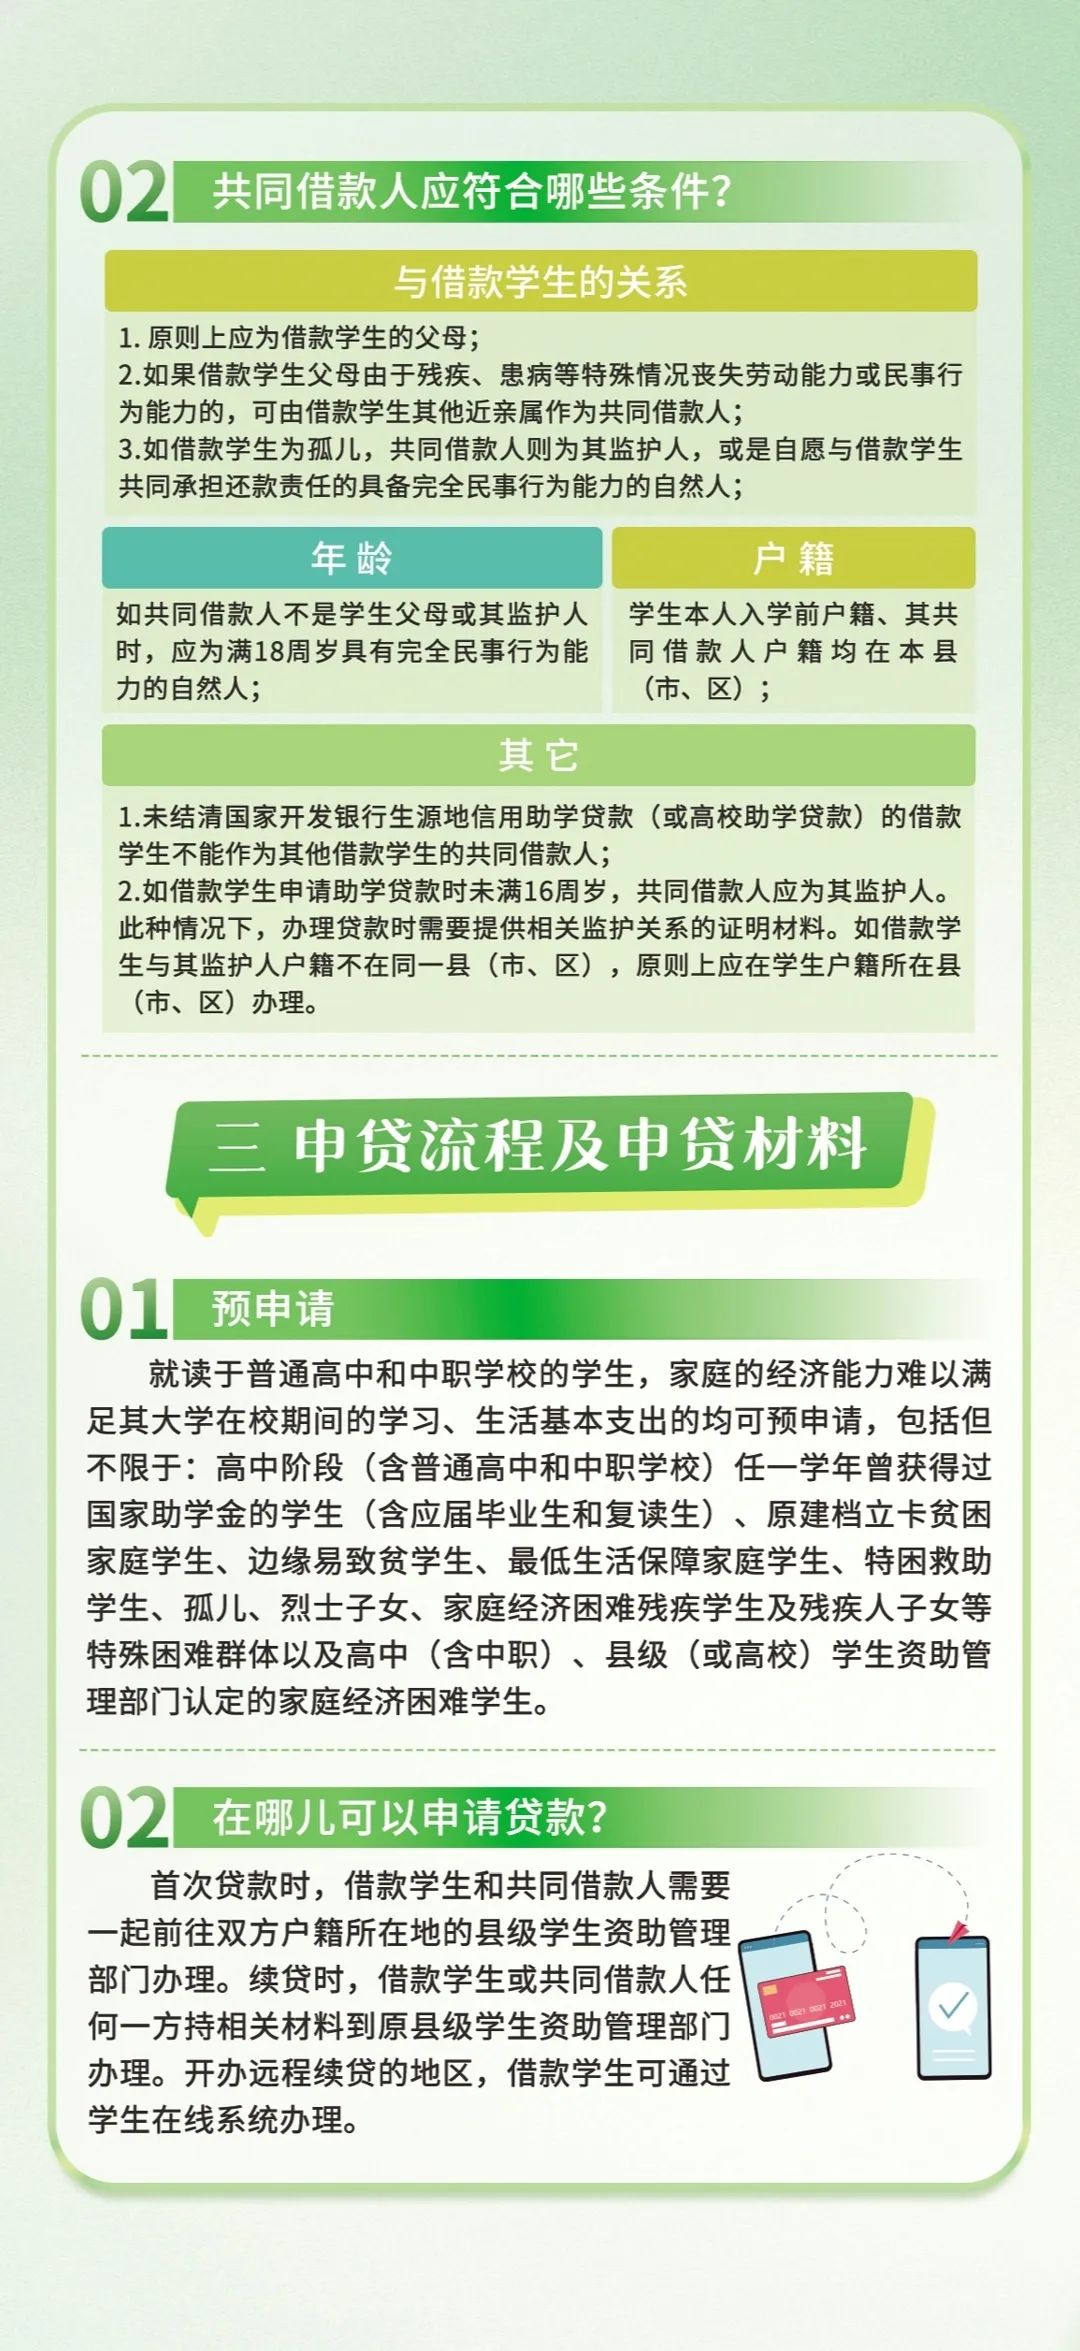 国家开发银行江苏省分行发布了关于转发《2024年国家助学贷款工作指引